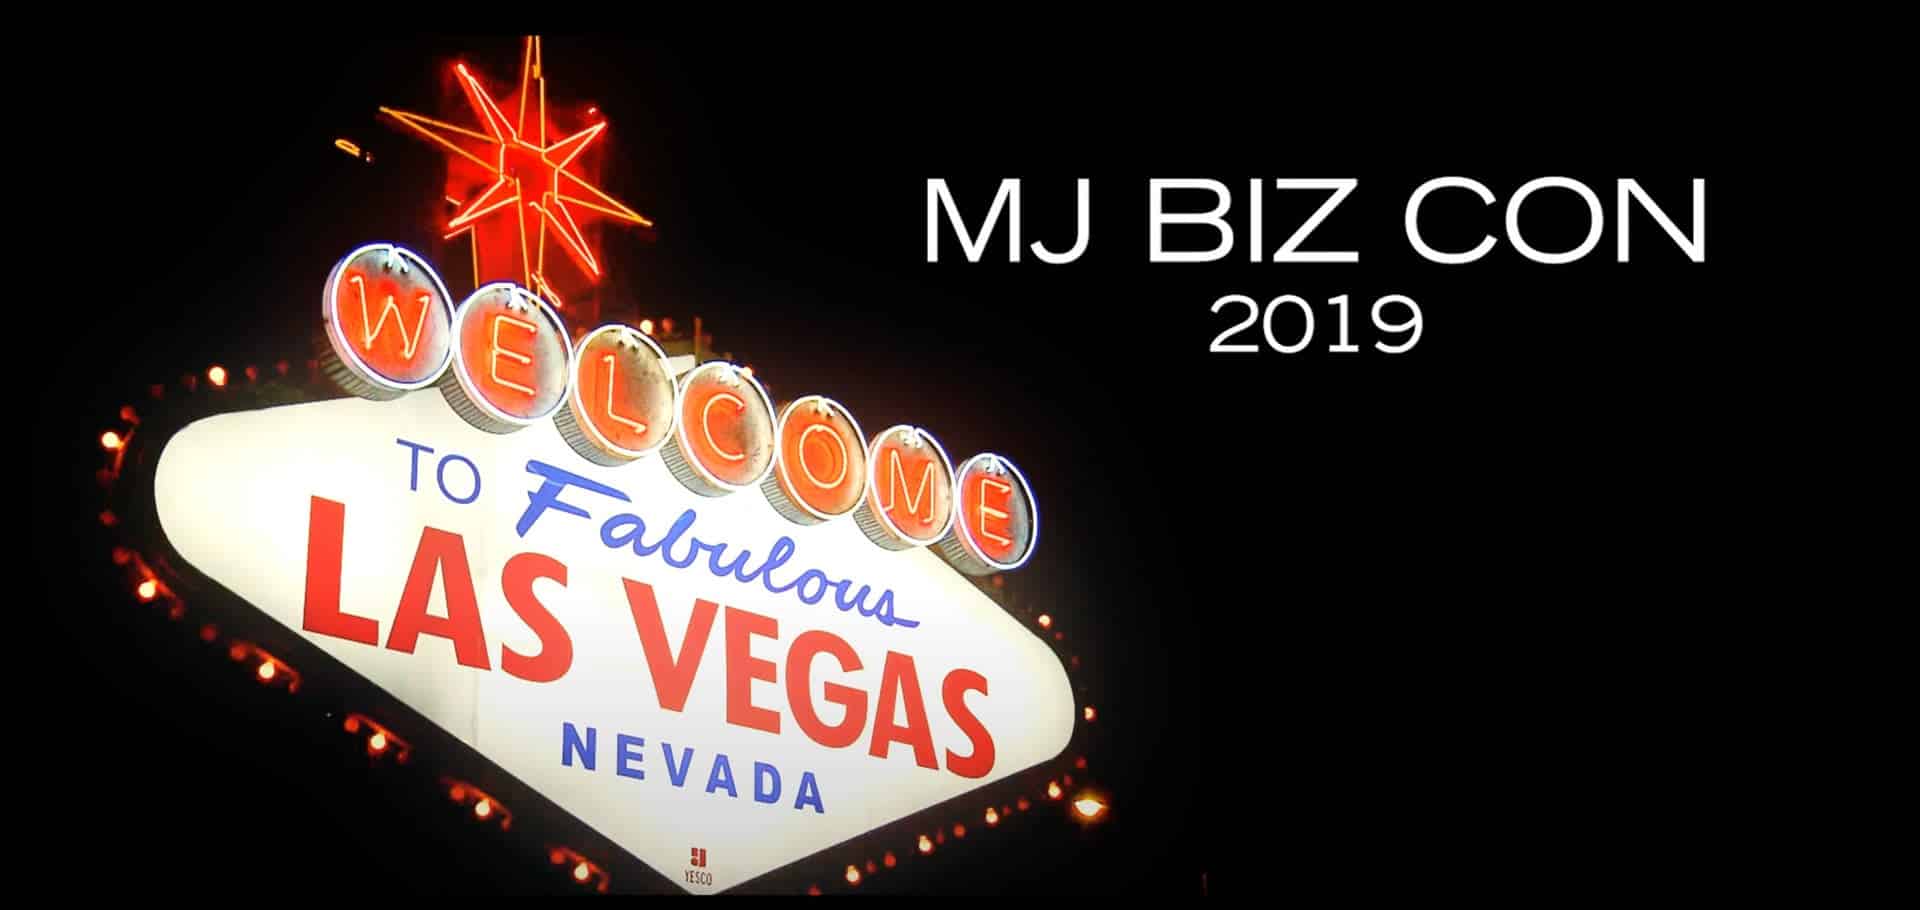 MJBizCon LAs Vegas 2019 flyer